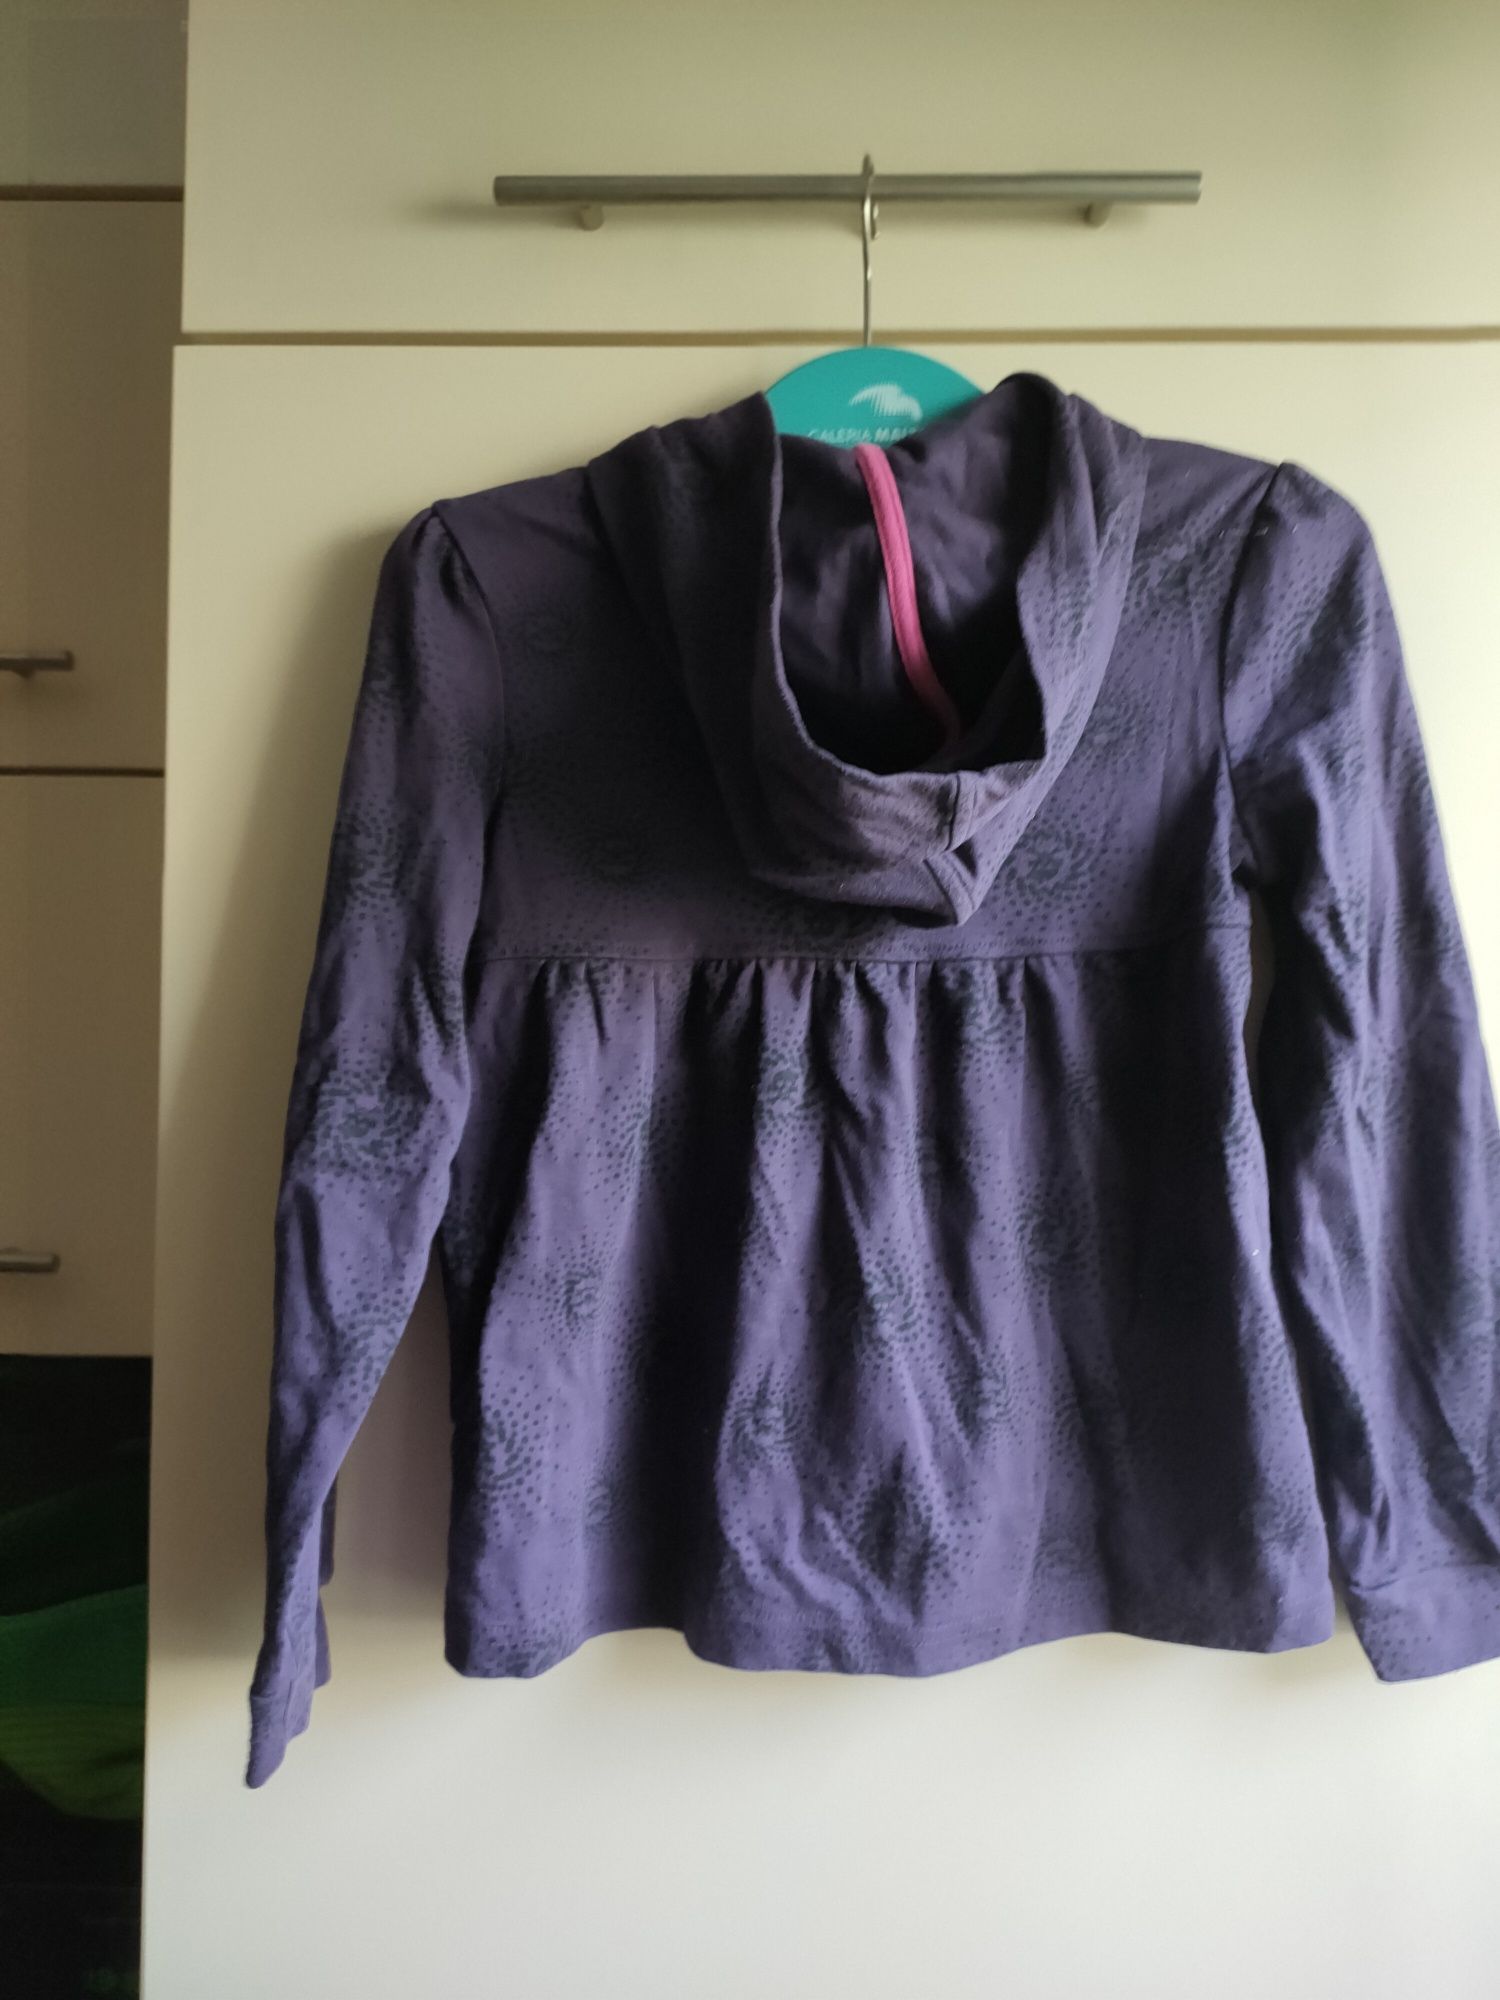 Fioletowa bluza rozmiar 152 cm